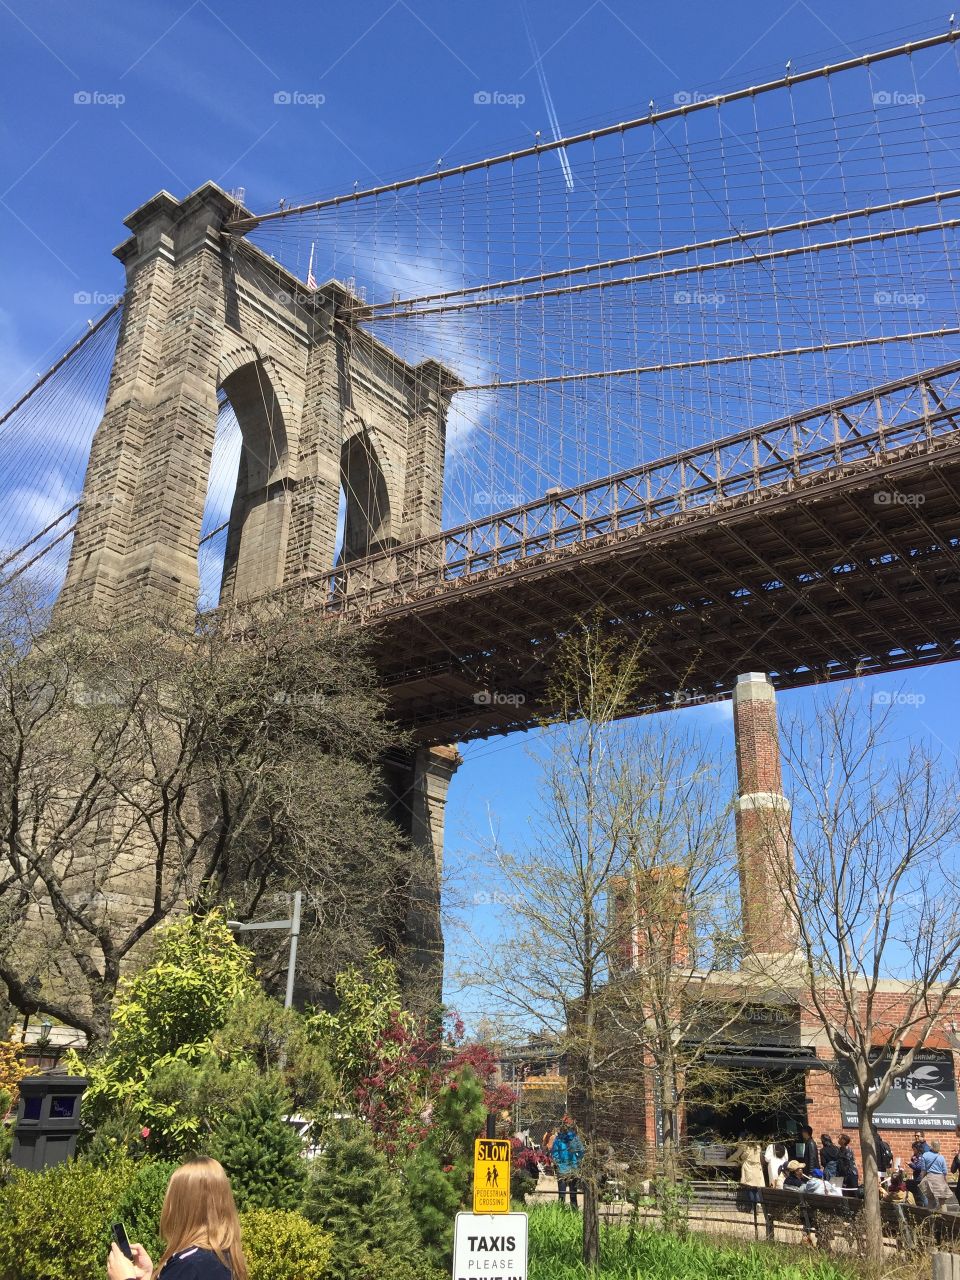 Beautiful Brooklyn bridge #brooklyn #brooklynbridge #nyc